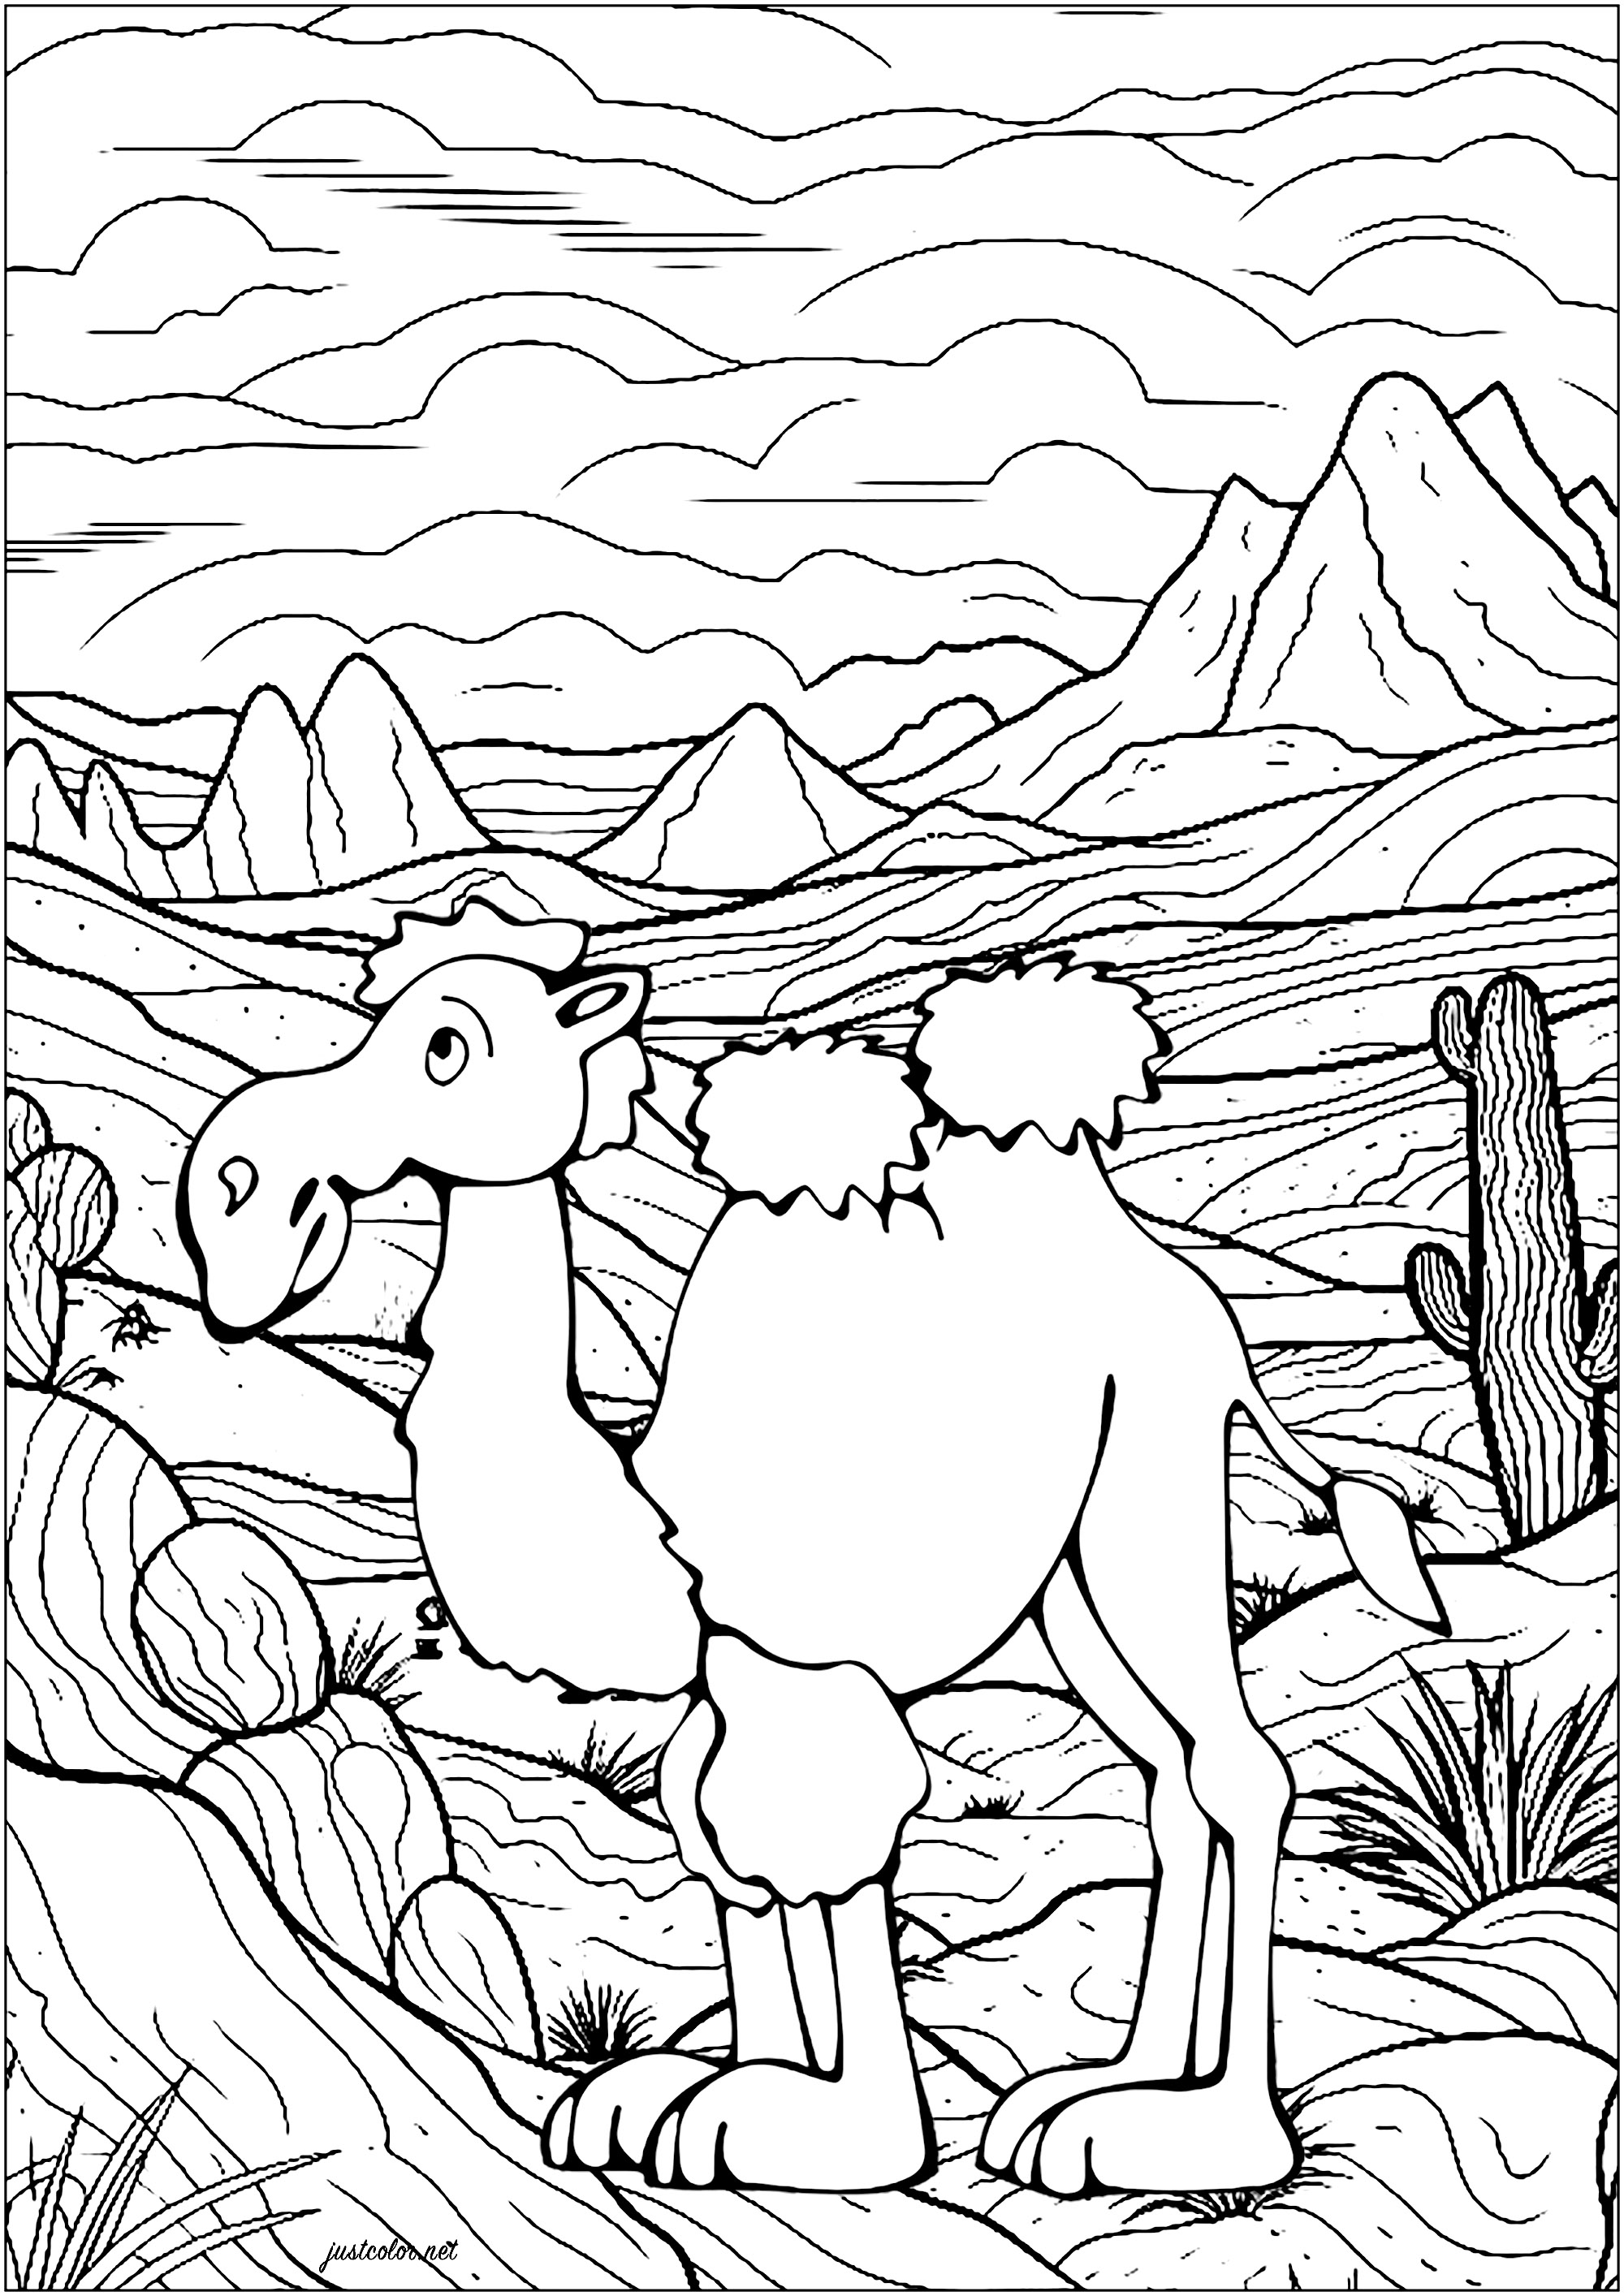 Camello en el desierto. Coloreado de un camello en el desierto, con muchos detalles en el fondo: montañas, cactus, cielo nublado ...